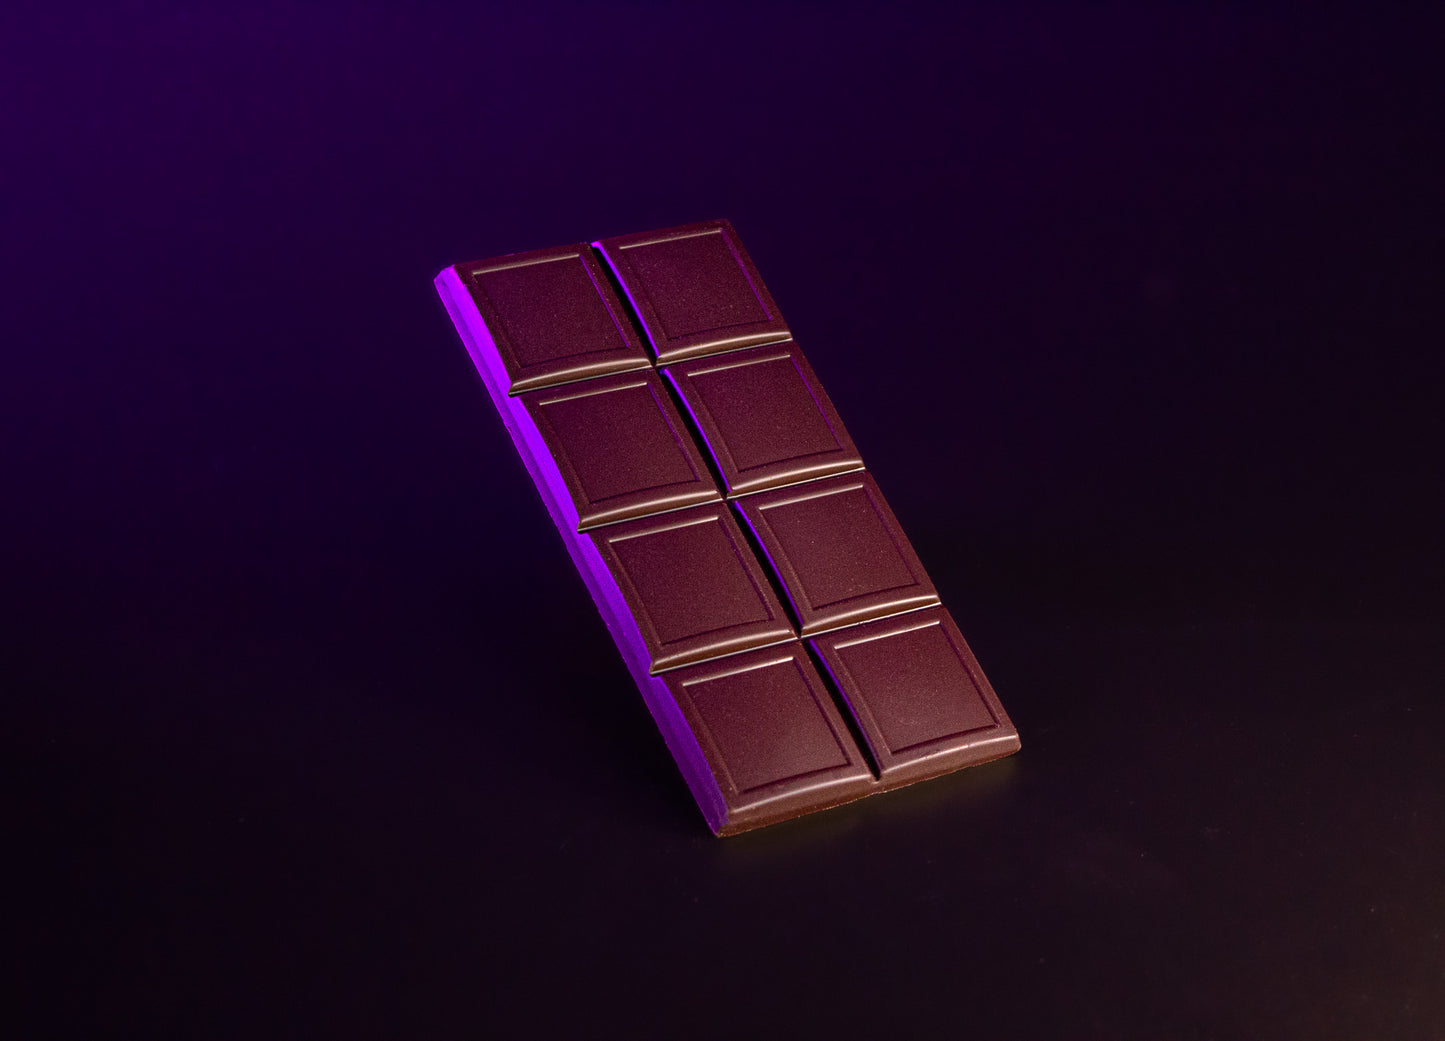 Nahaufnahme eines Stücks der Premium Johannisbrot Schokolade, die Beschaffenheit der Schokolade und die Johannisbrotstückchen sind gut zu erkennen.